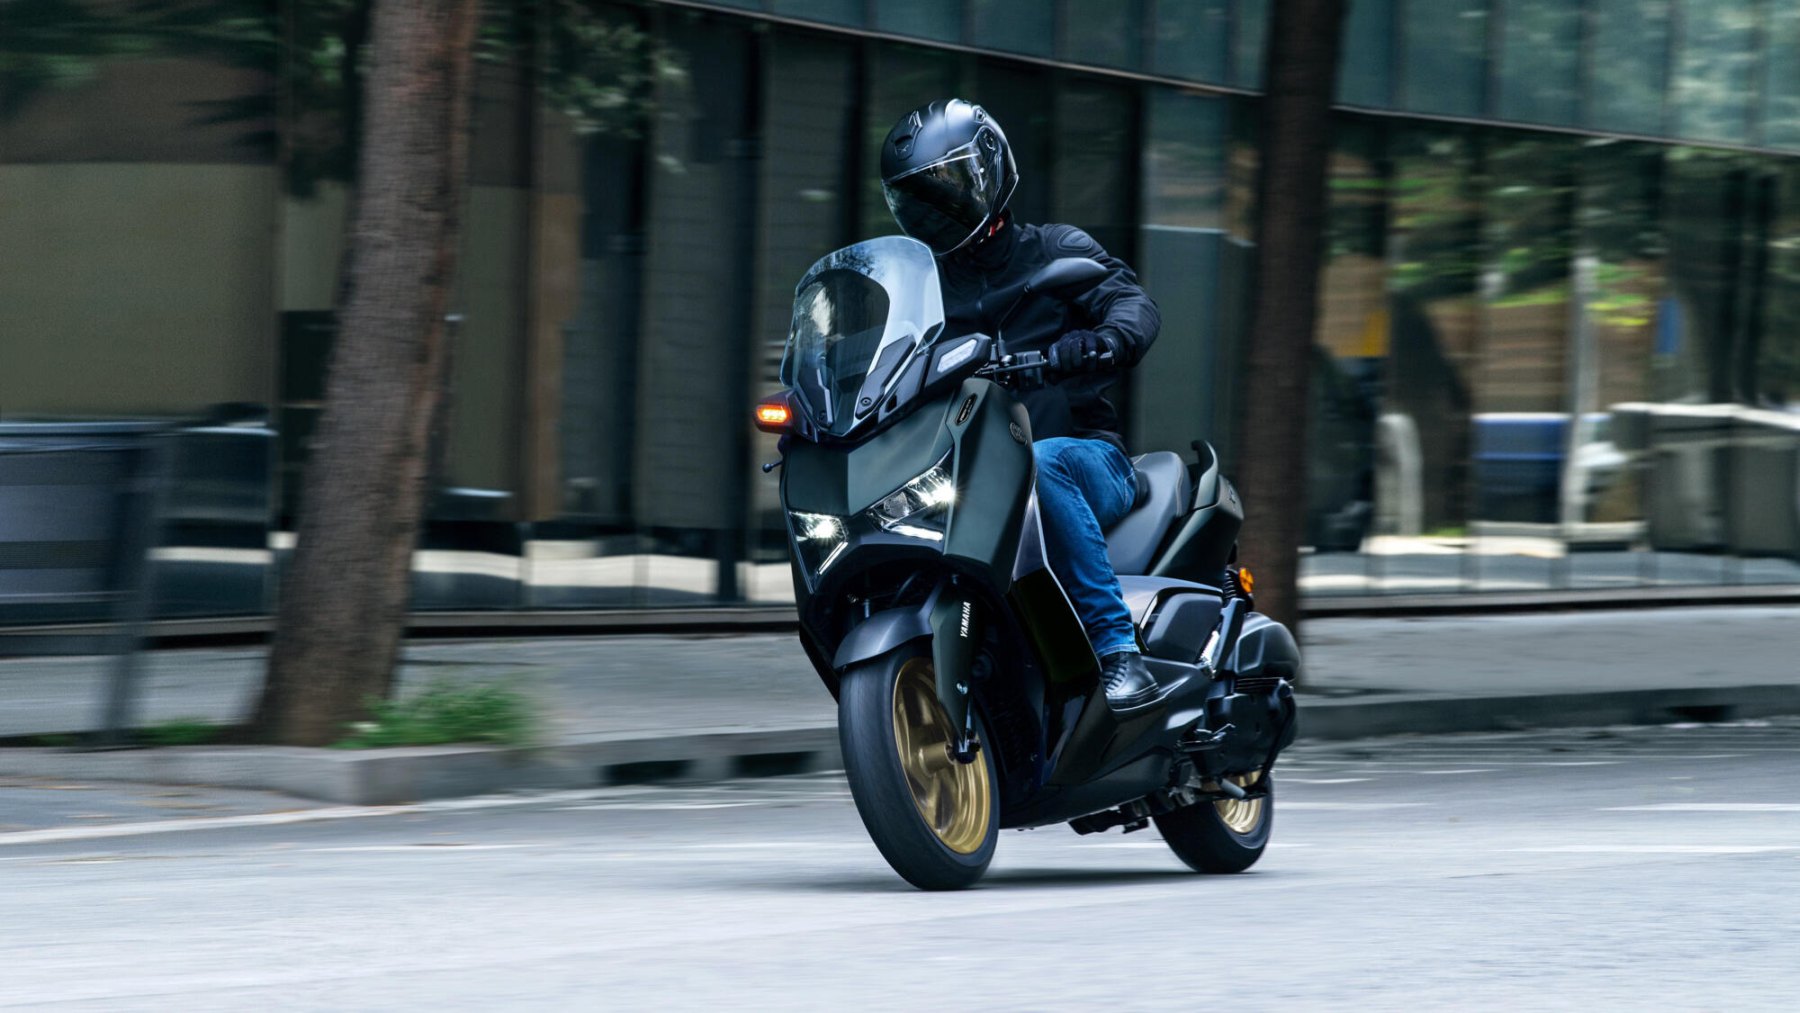 Vista dinámica en acción del Yamaha X-Max 125cc mostrando su perfil lateral.